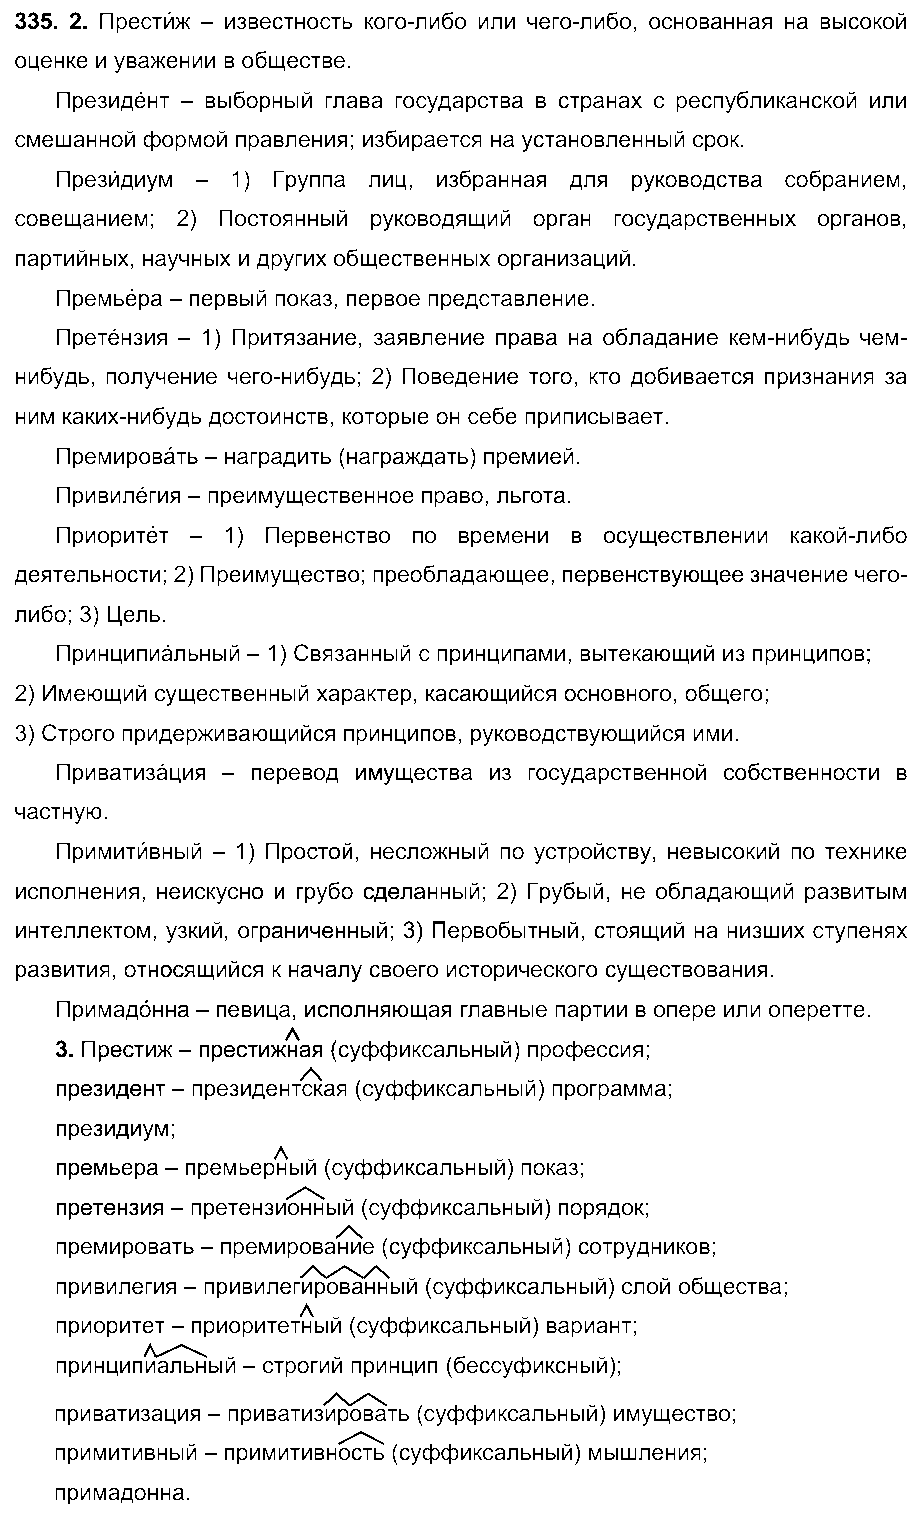 ГДЗ Русский язык 6 класс - 335